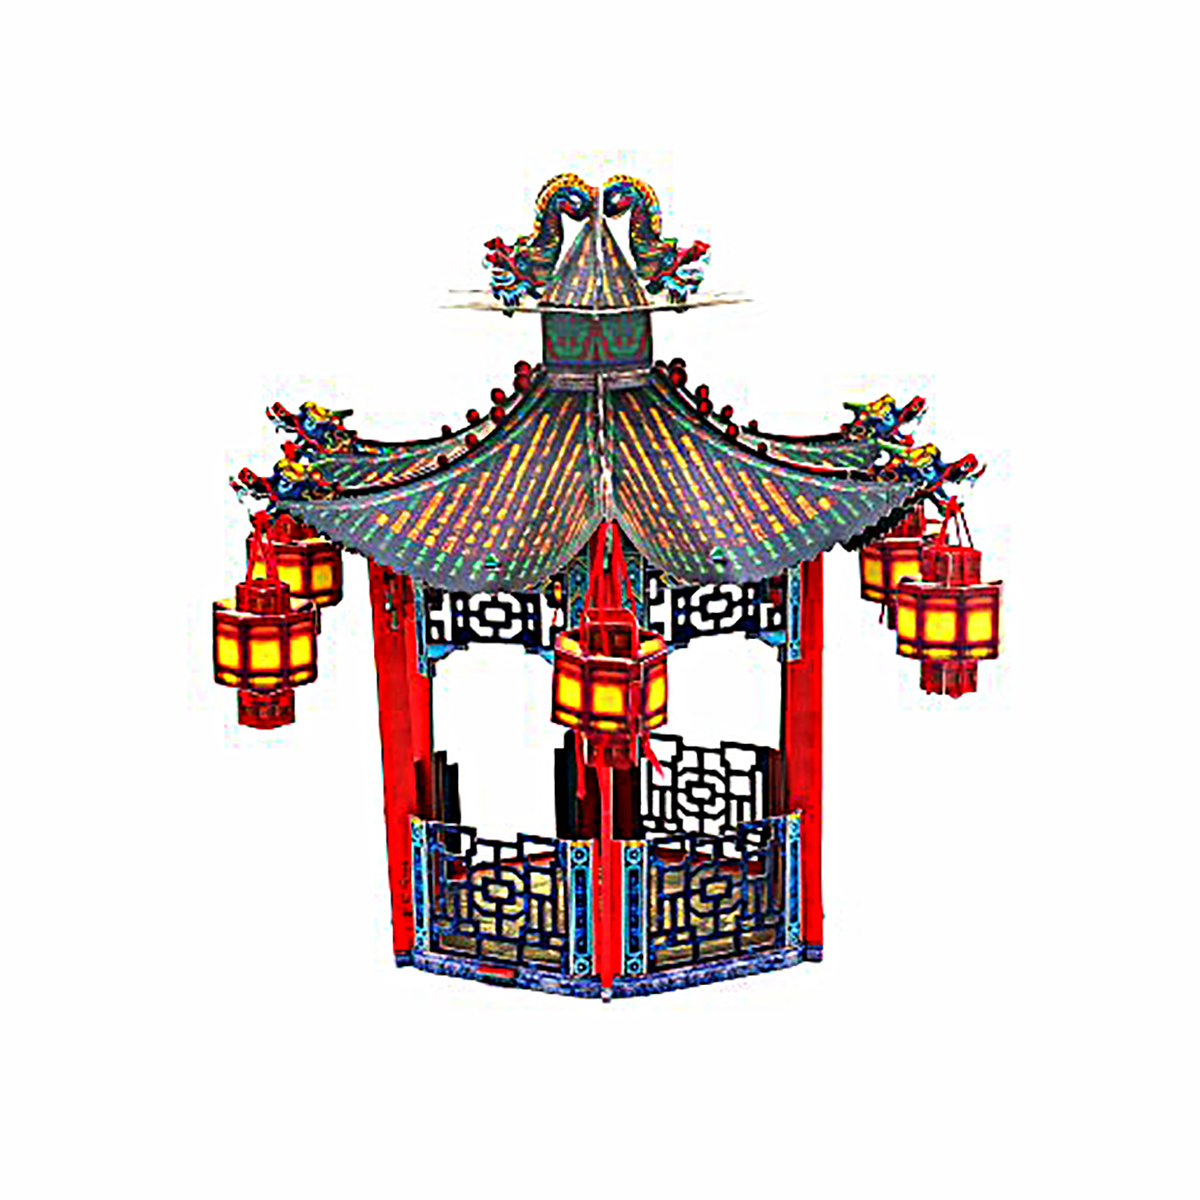 3D Puzzle KARTONMODELLBAU Papier Modell Geschenk Spielzeug Chinesischer Pavillion